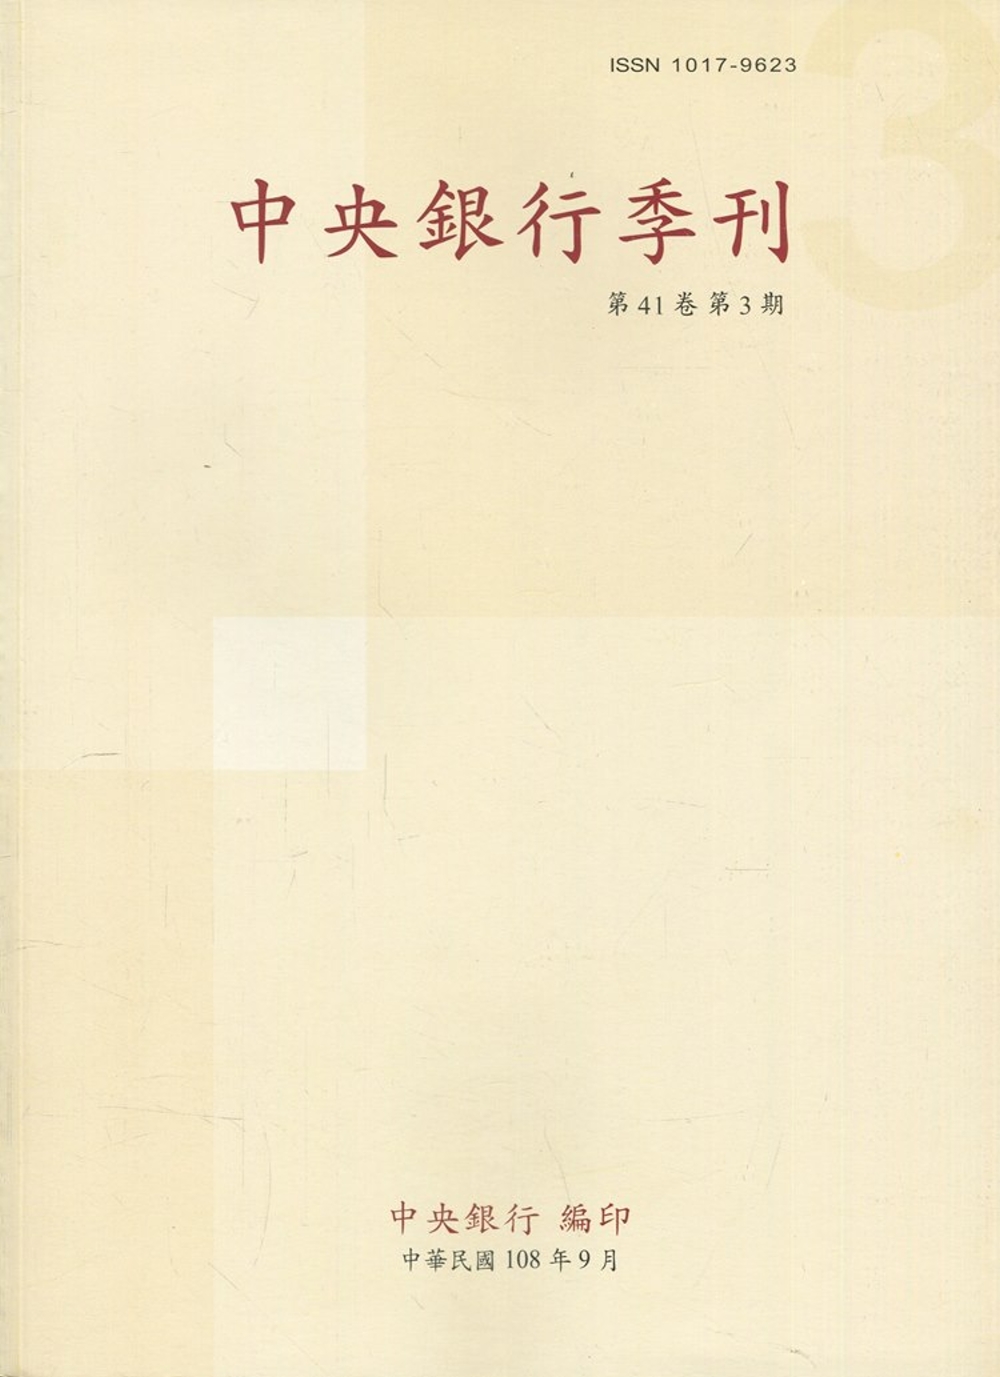 中央銀行季刊41卷3期(108.09)